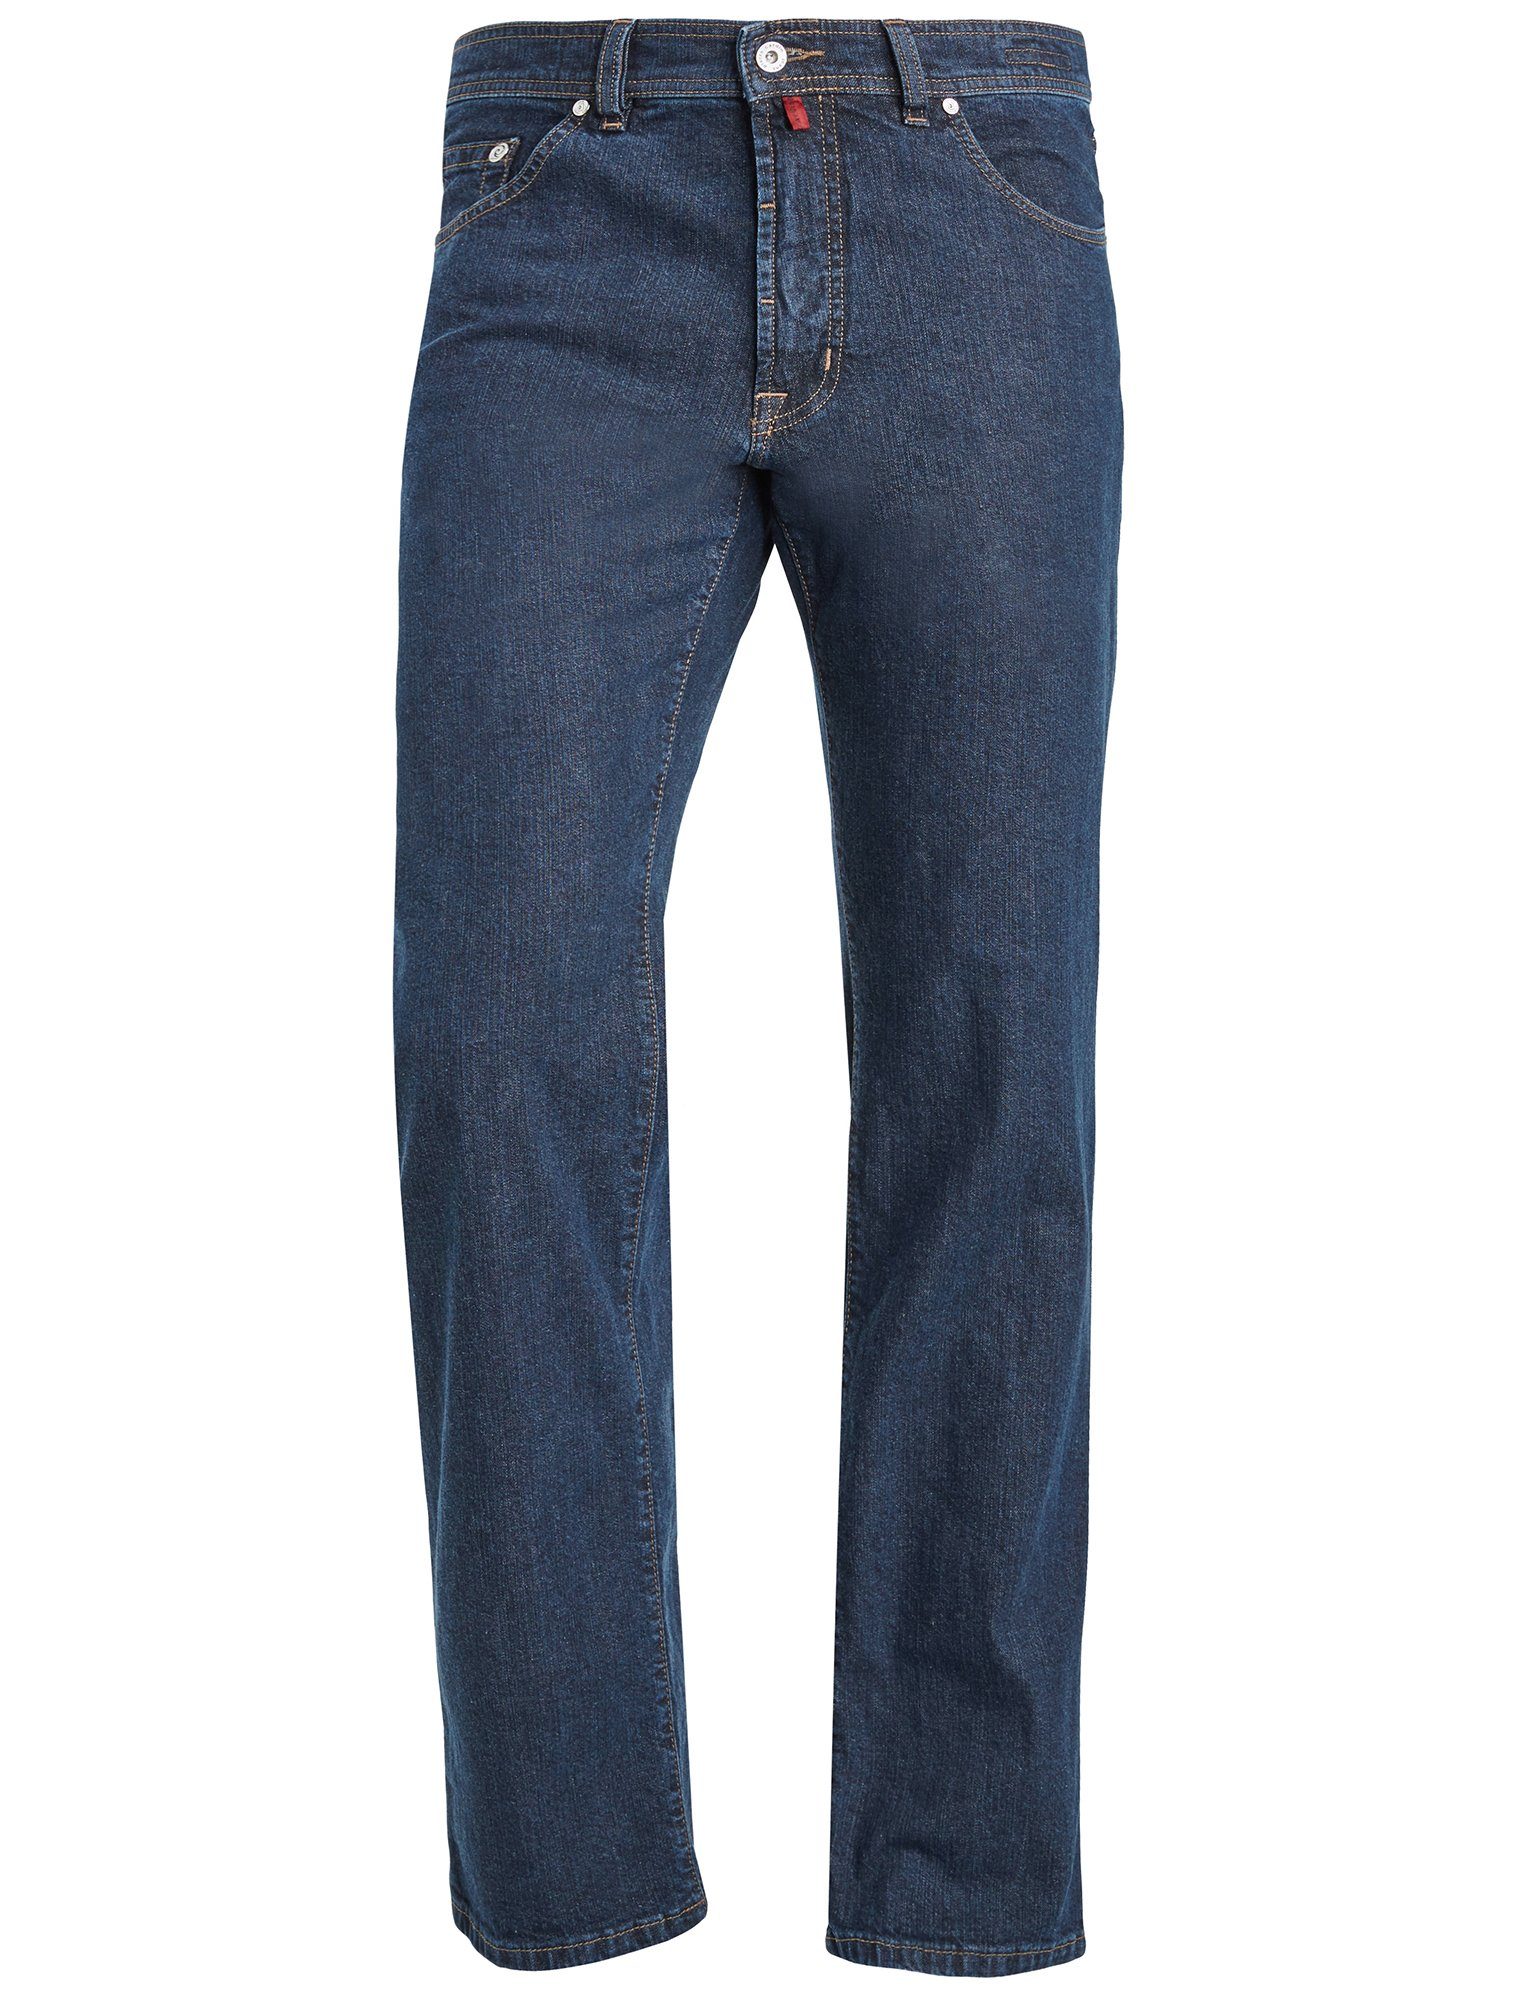 Pierre Cardin 5-Pocket-Jeans PIERRE 3880 black CARDIN DIJON 161.02 Konfektionsgröße/Übe blue indigo